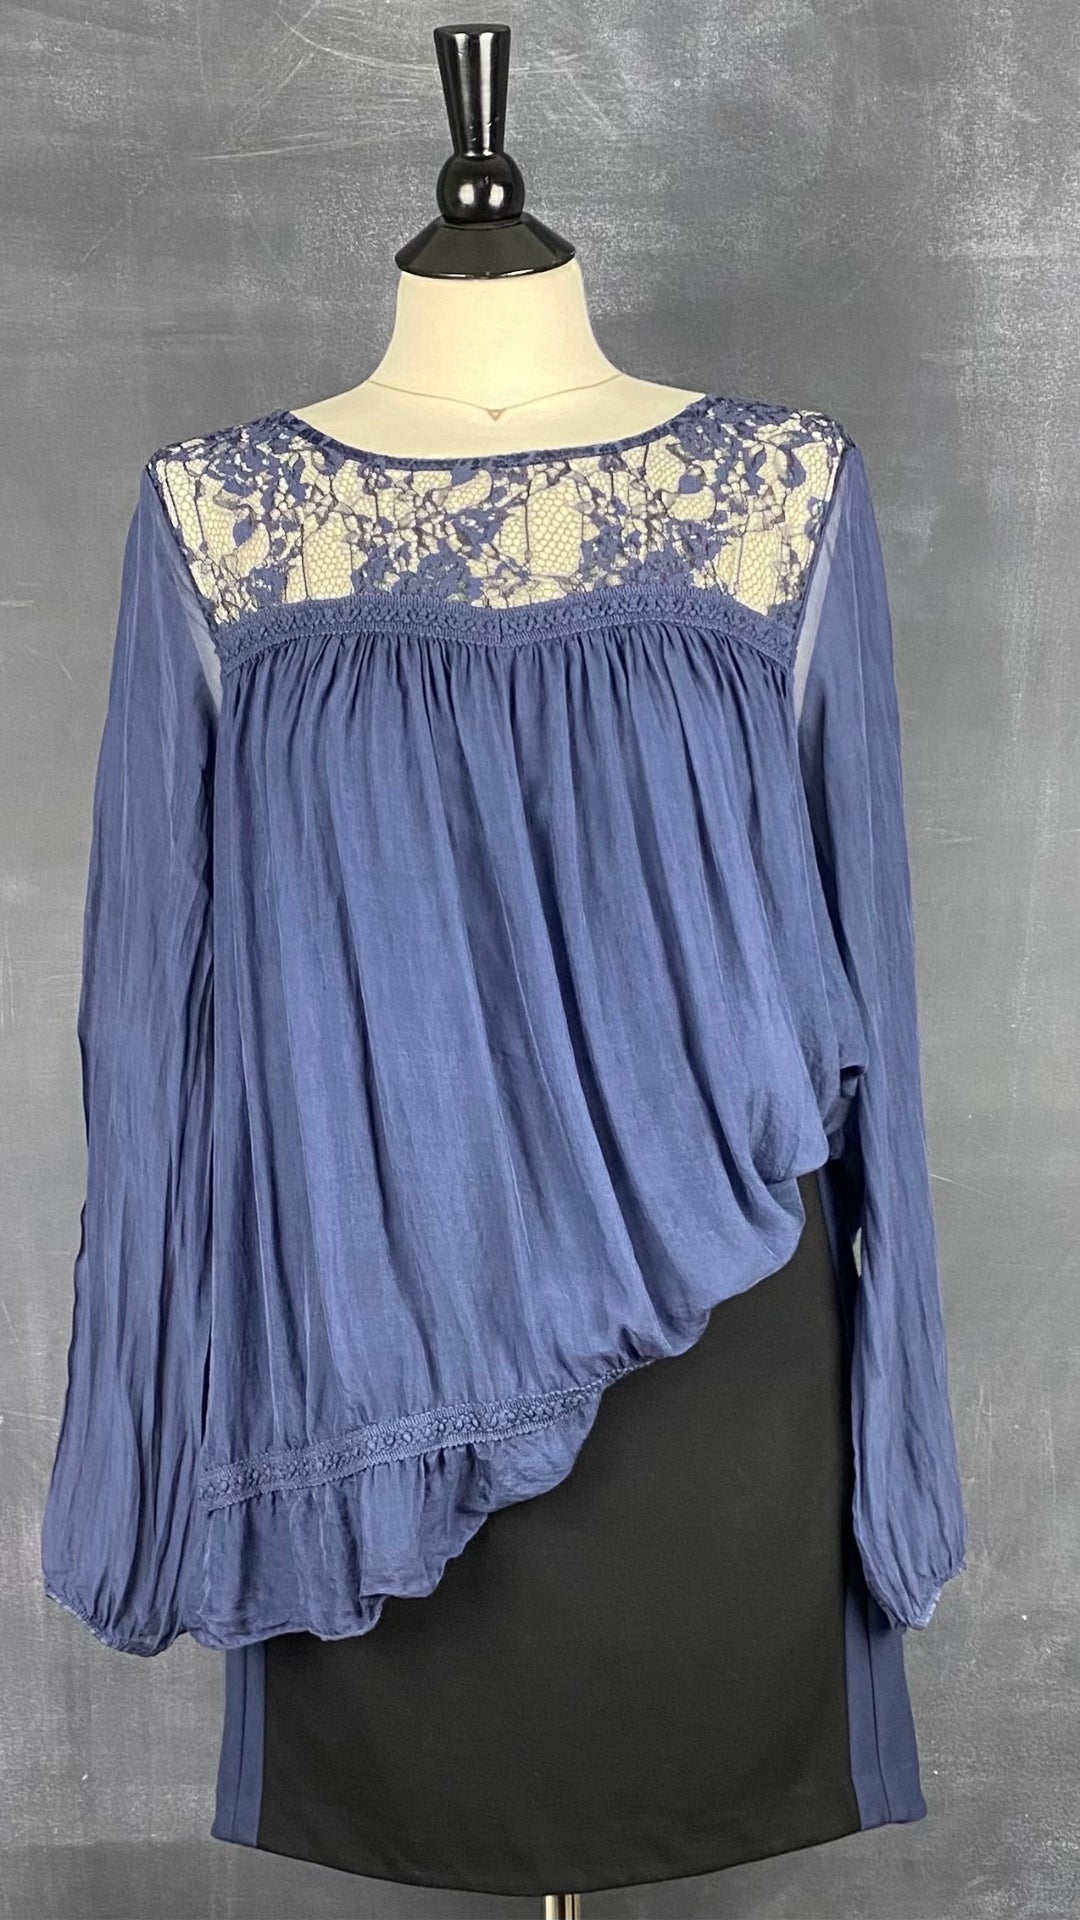 Blouse fluide dentelle et soie bleue Giulia, taille large. Vue de l'agencement avec la jupe noire à encadré bleu Diane von Furstenberg.